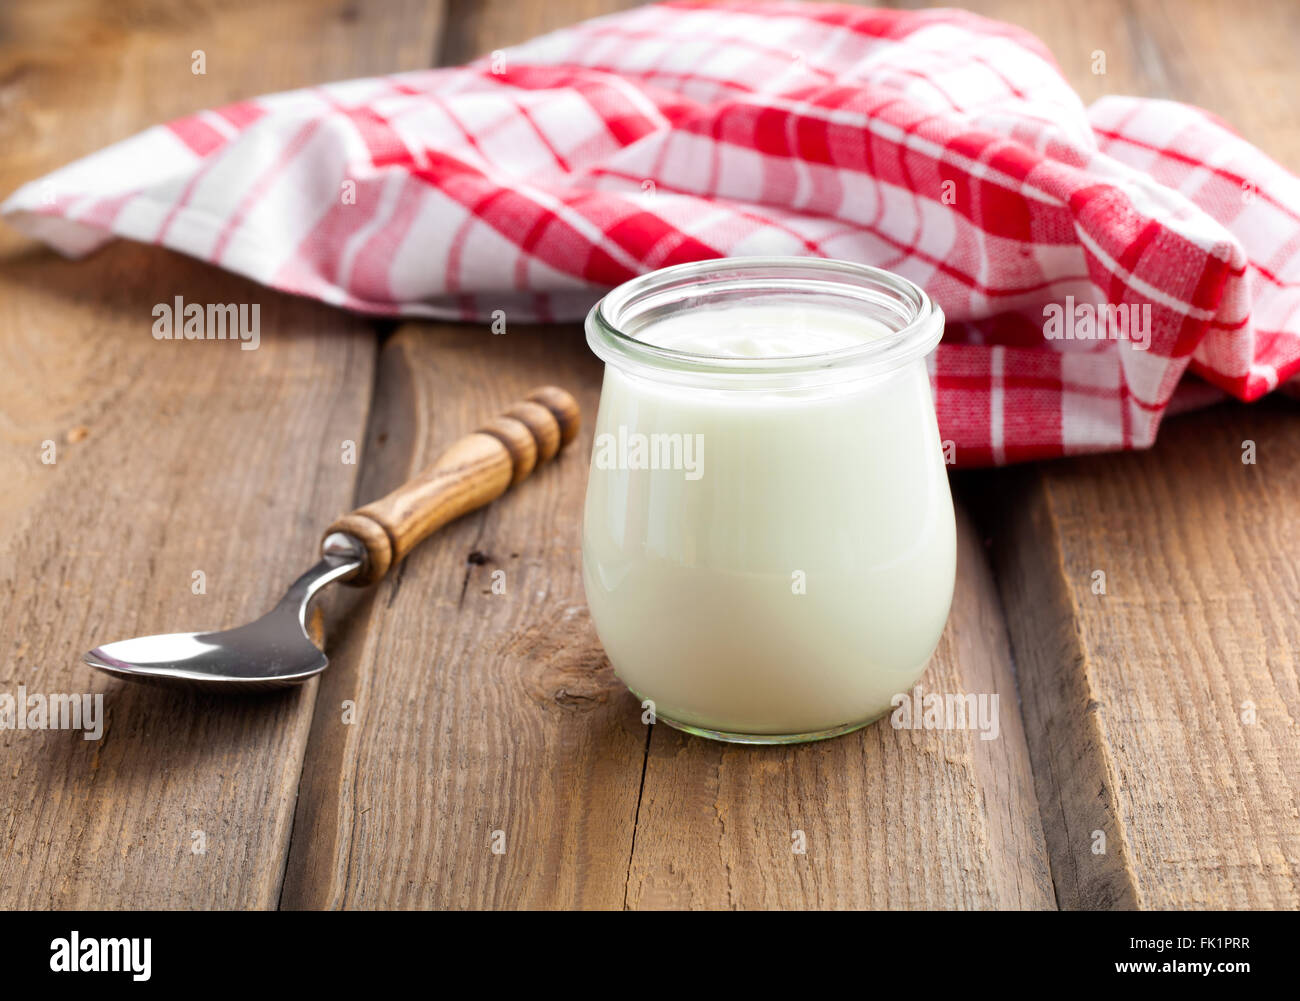 Lecker, nahrhaft und gesund Joghurt in einem Glas Gläser mit Löffel auf hölzernen Hintergrund Stockfoto